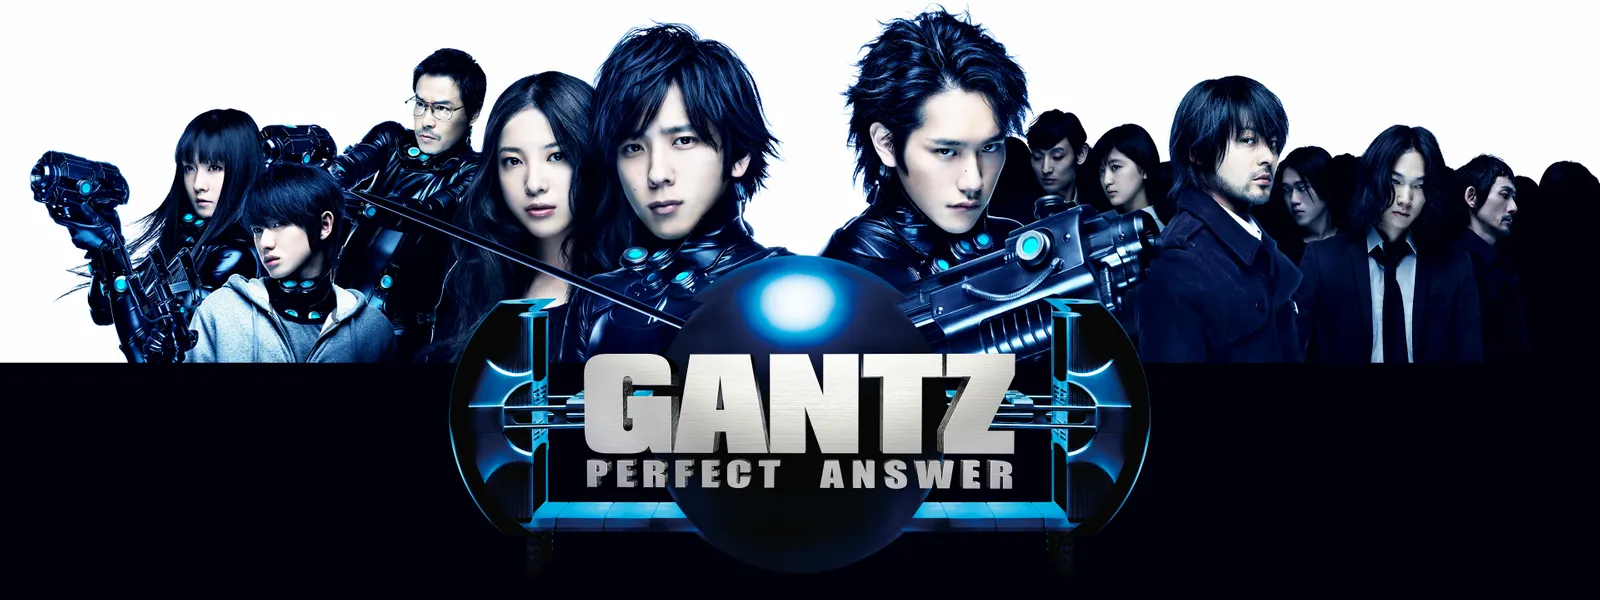 Gantz Perfect Answer が見放題 Hulu フールー お試し無料